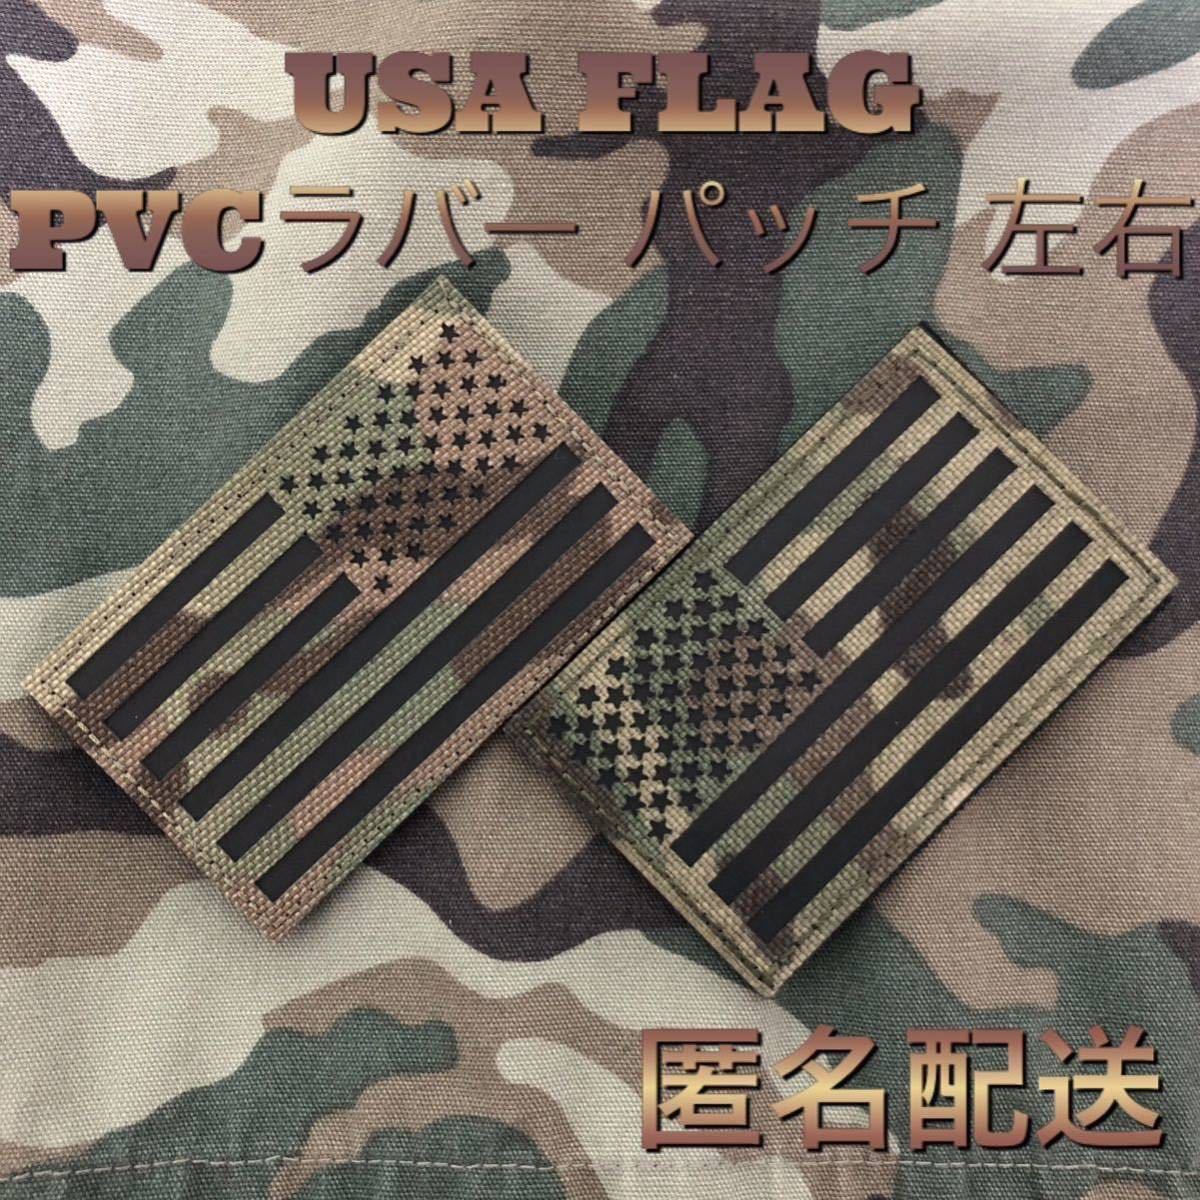 USA FLAG 星条旗 国旗 PVCラバー ミリタリー パッチ ワッペン カモフラ マルチカム 左右 サバゲー リメイクの画像1